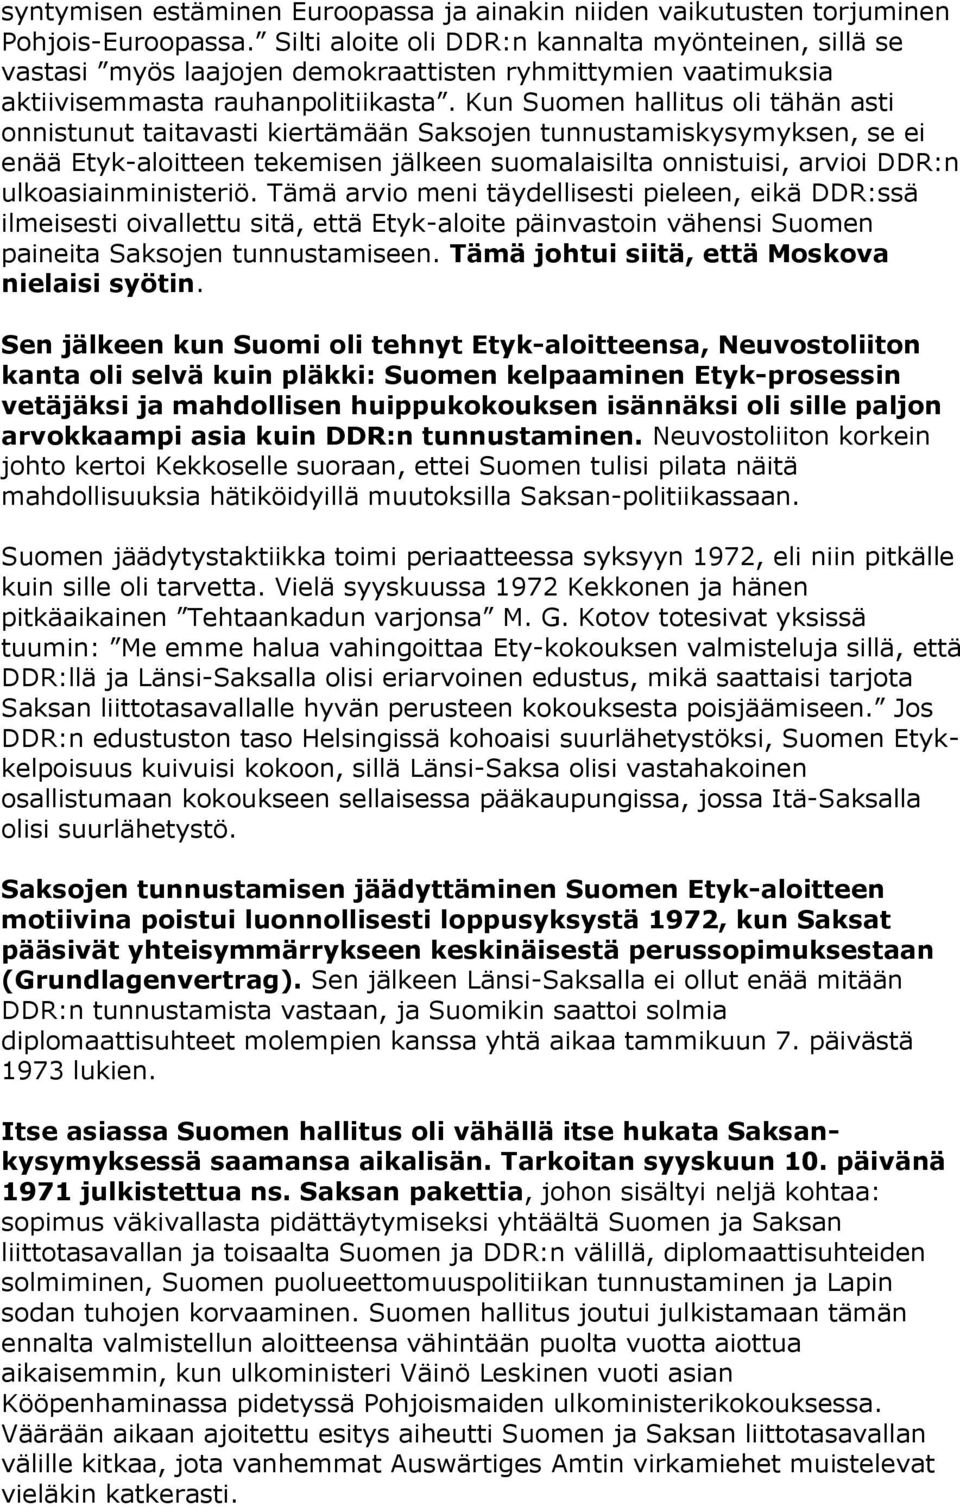 Kun Suomen hallitus oli tähän asti onnistunut taitavasti kiertämään Saksojen tunnustamiskysymyksen, se ei enää Etyk-aloitteen tekemisen jälkeen suomalaisilta onnistuisi, arvioi DDR:n